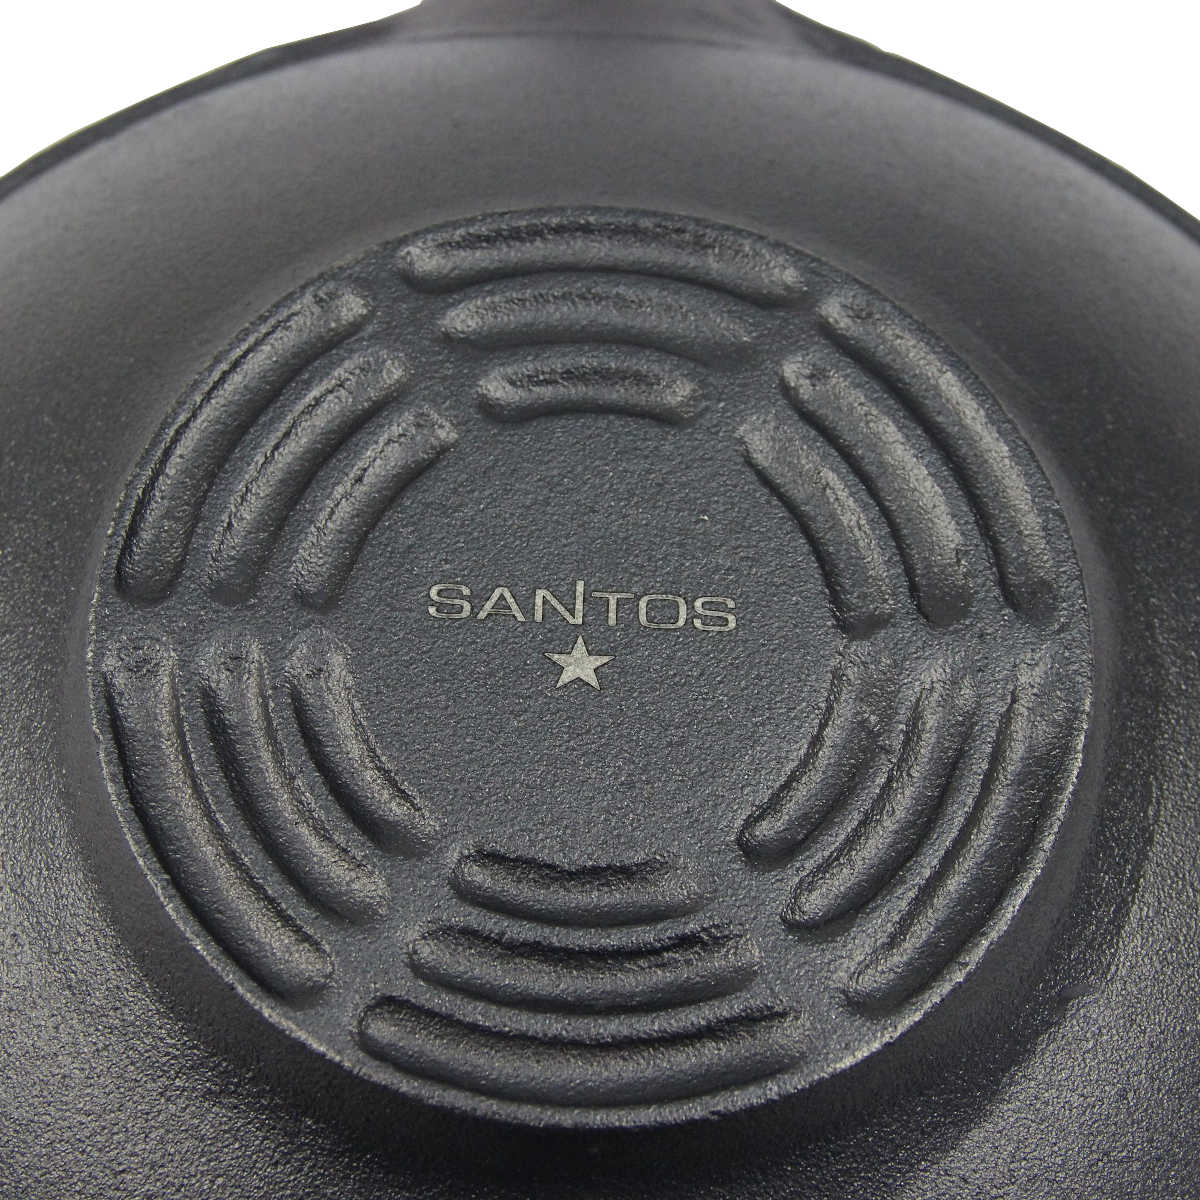 SANTOS Gusseisen 48,8cm - Kohle- oder für ideal Feuerstelle Wokpfanne Guss-Wok x - oder - Grilltopf Feuertopf - Gas-Grill rund ø31,8cm - Lagerfeuer